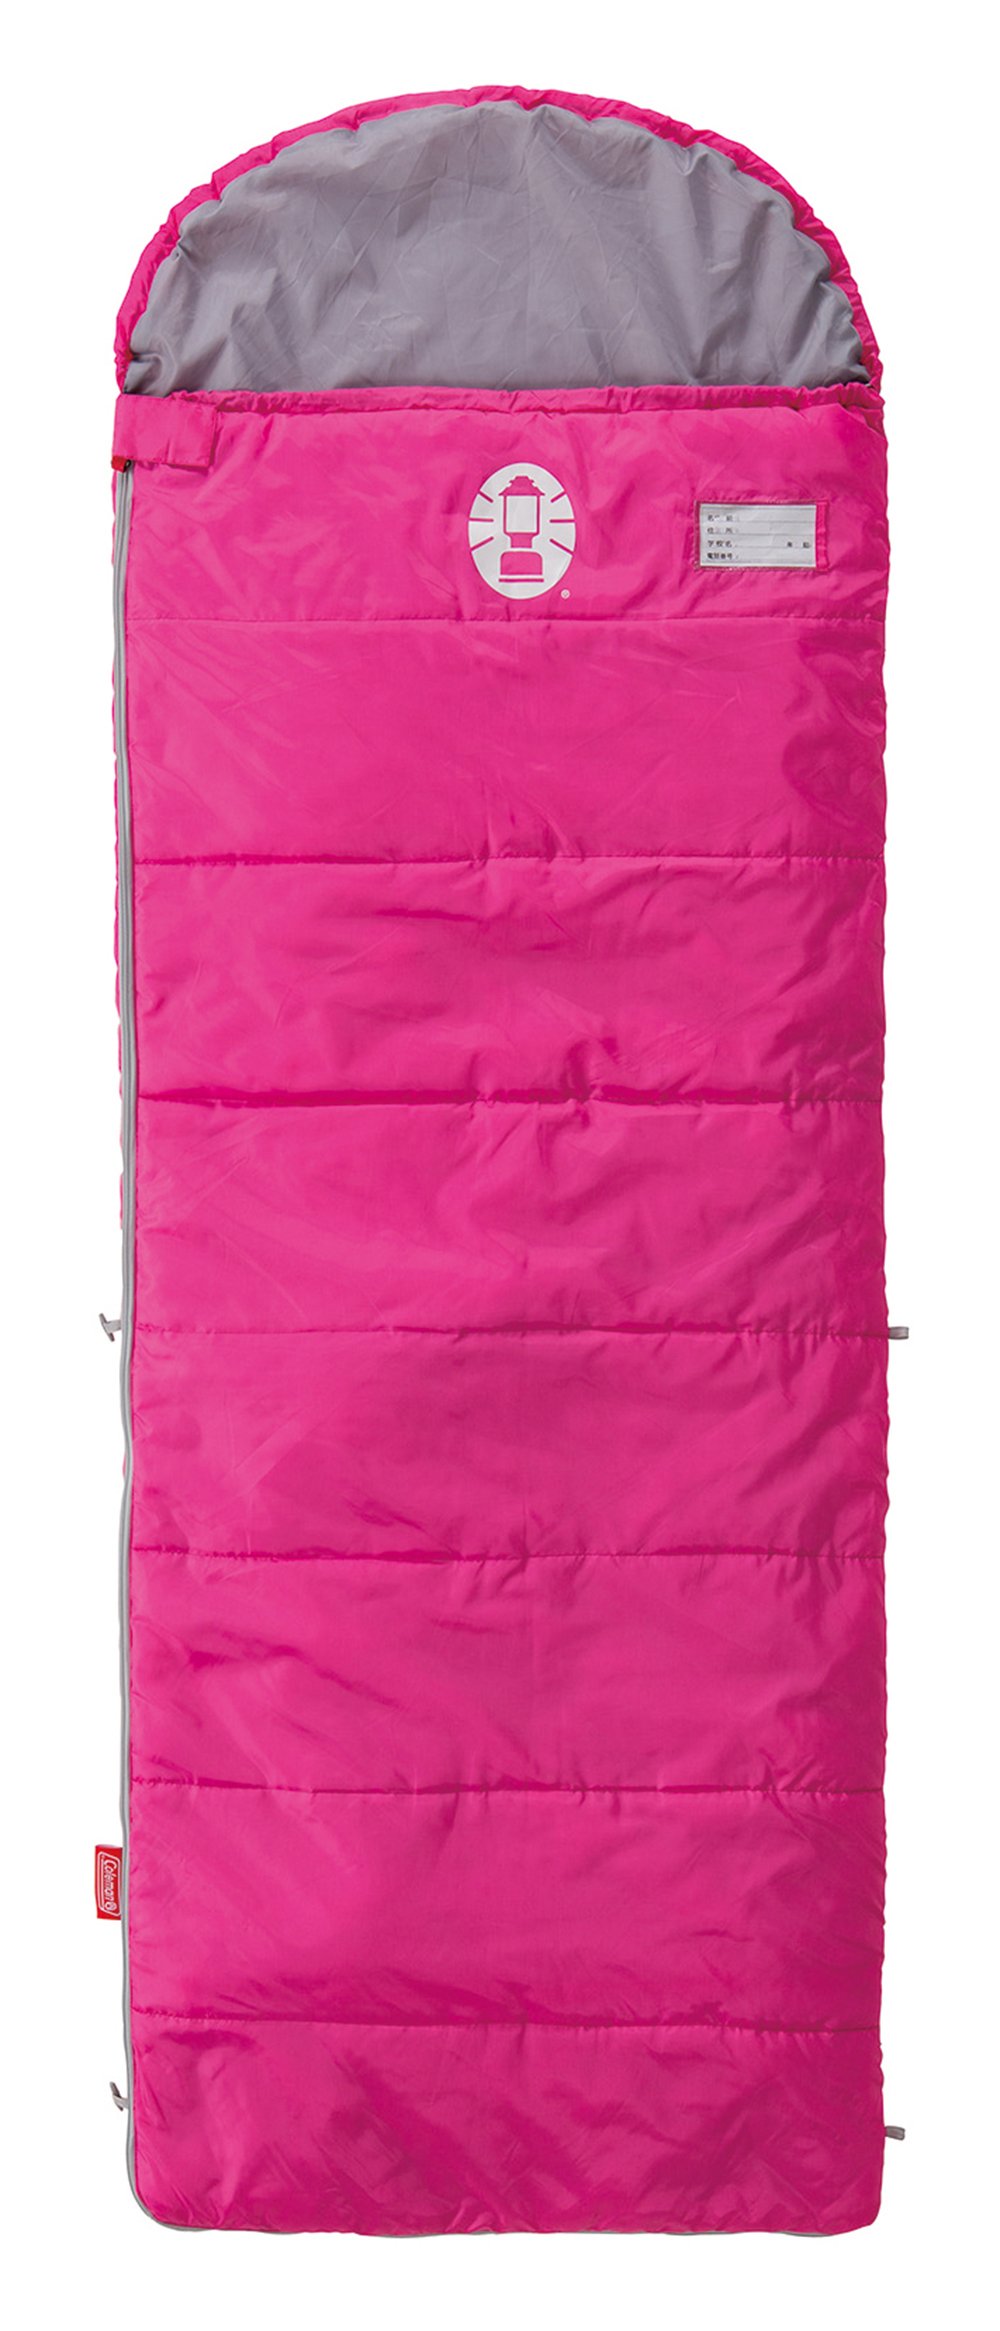 コールマン(Coleman) 寝袋 スクールキッズ C10 使用可能温度10度 封筒型 ピンク 2000027269